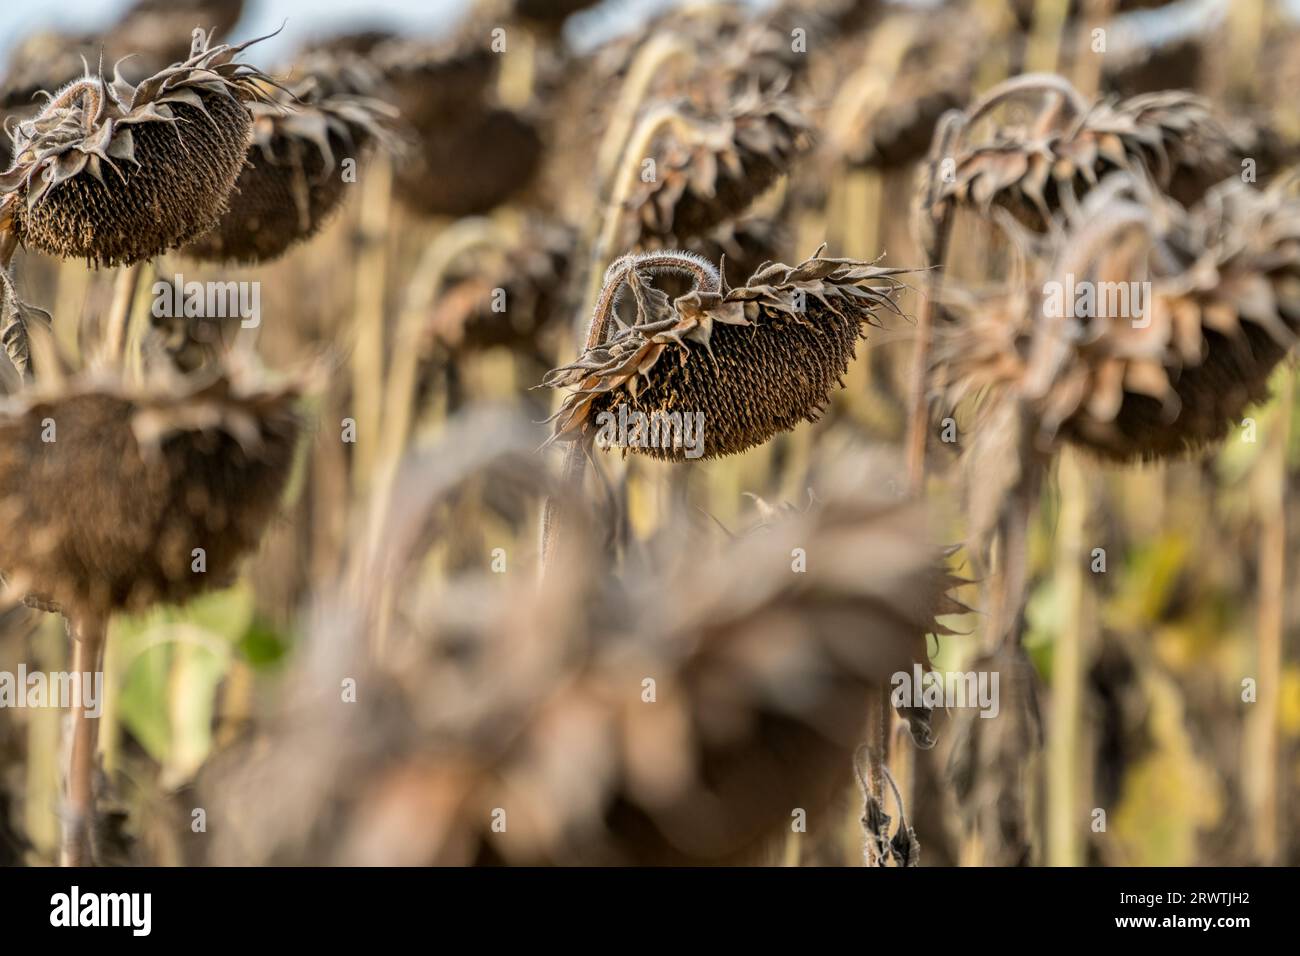 Vue rapprochée de tournesols secs et mûrs prêts à récolter sur le champ d'un agriculteur. Concept d'agriculture de production pétrolière Banque D'Images